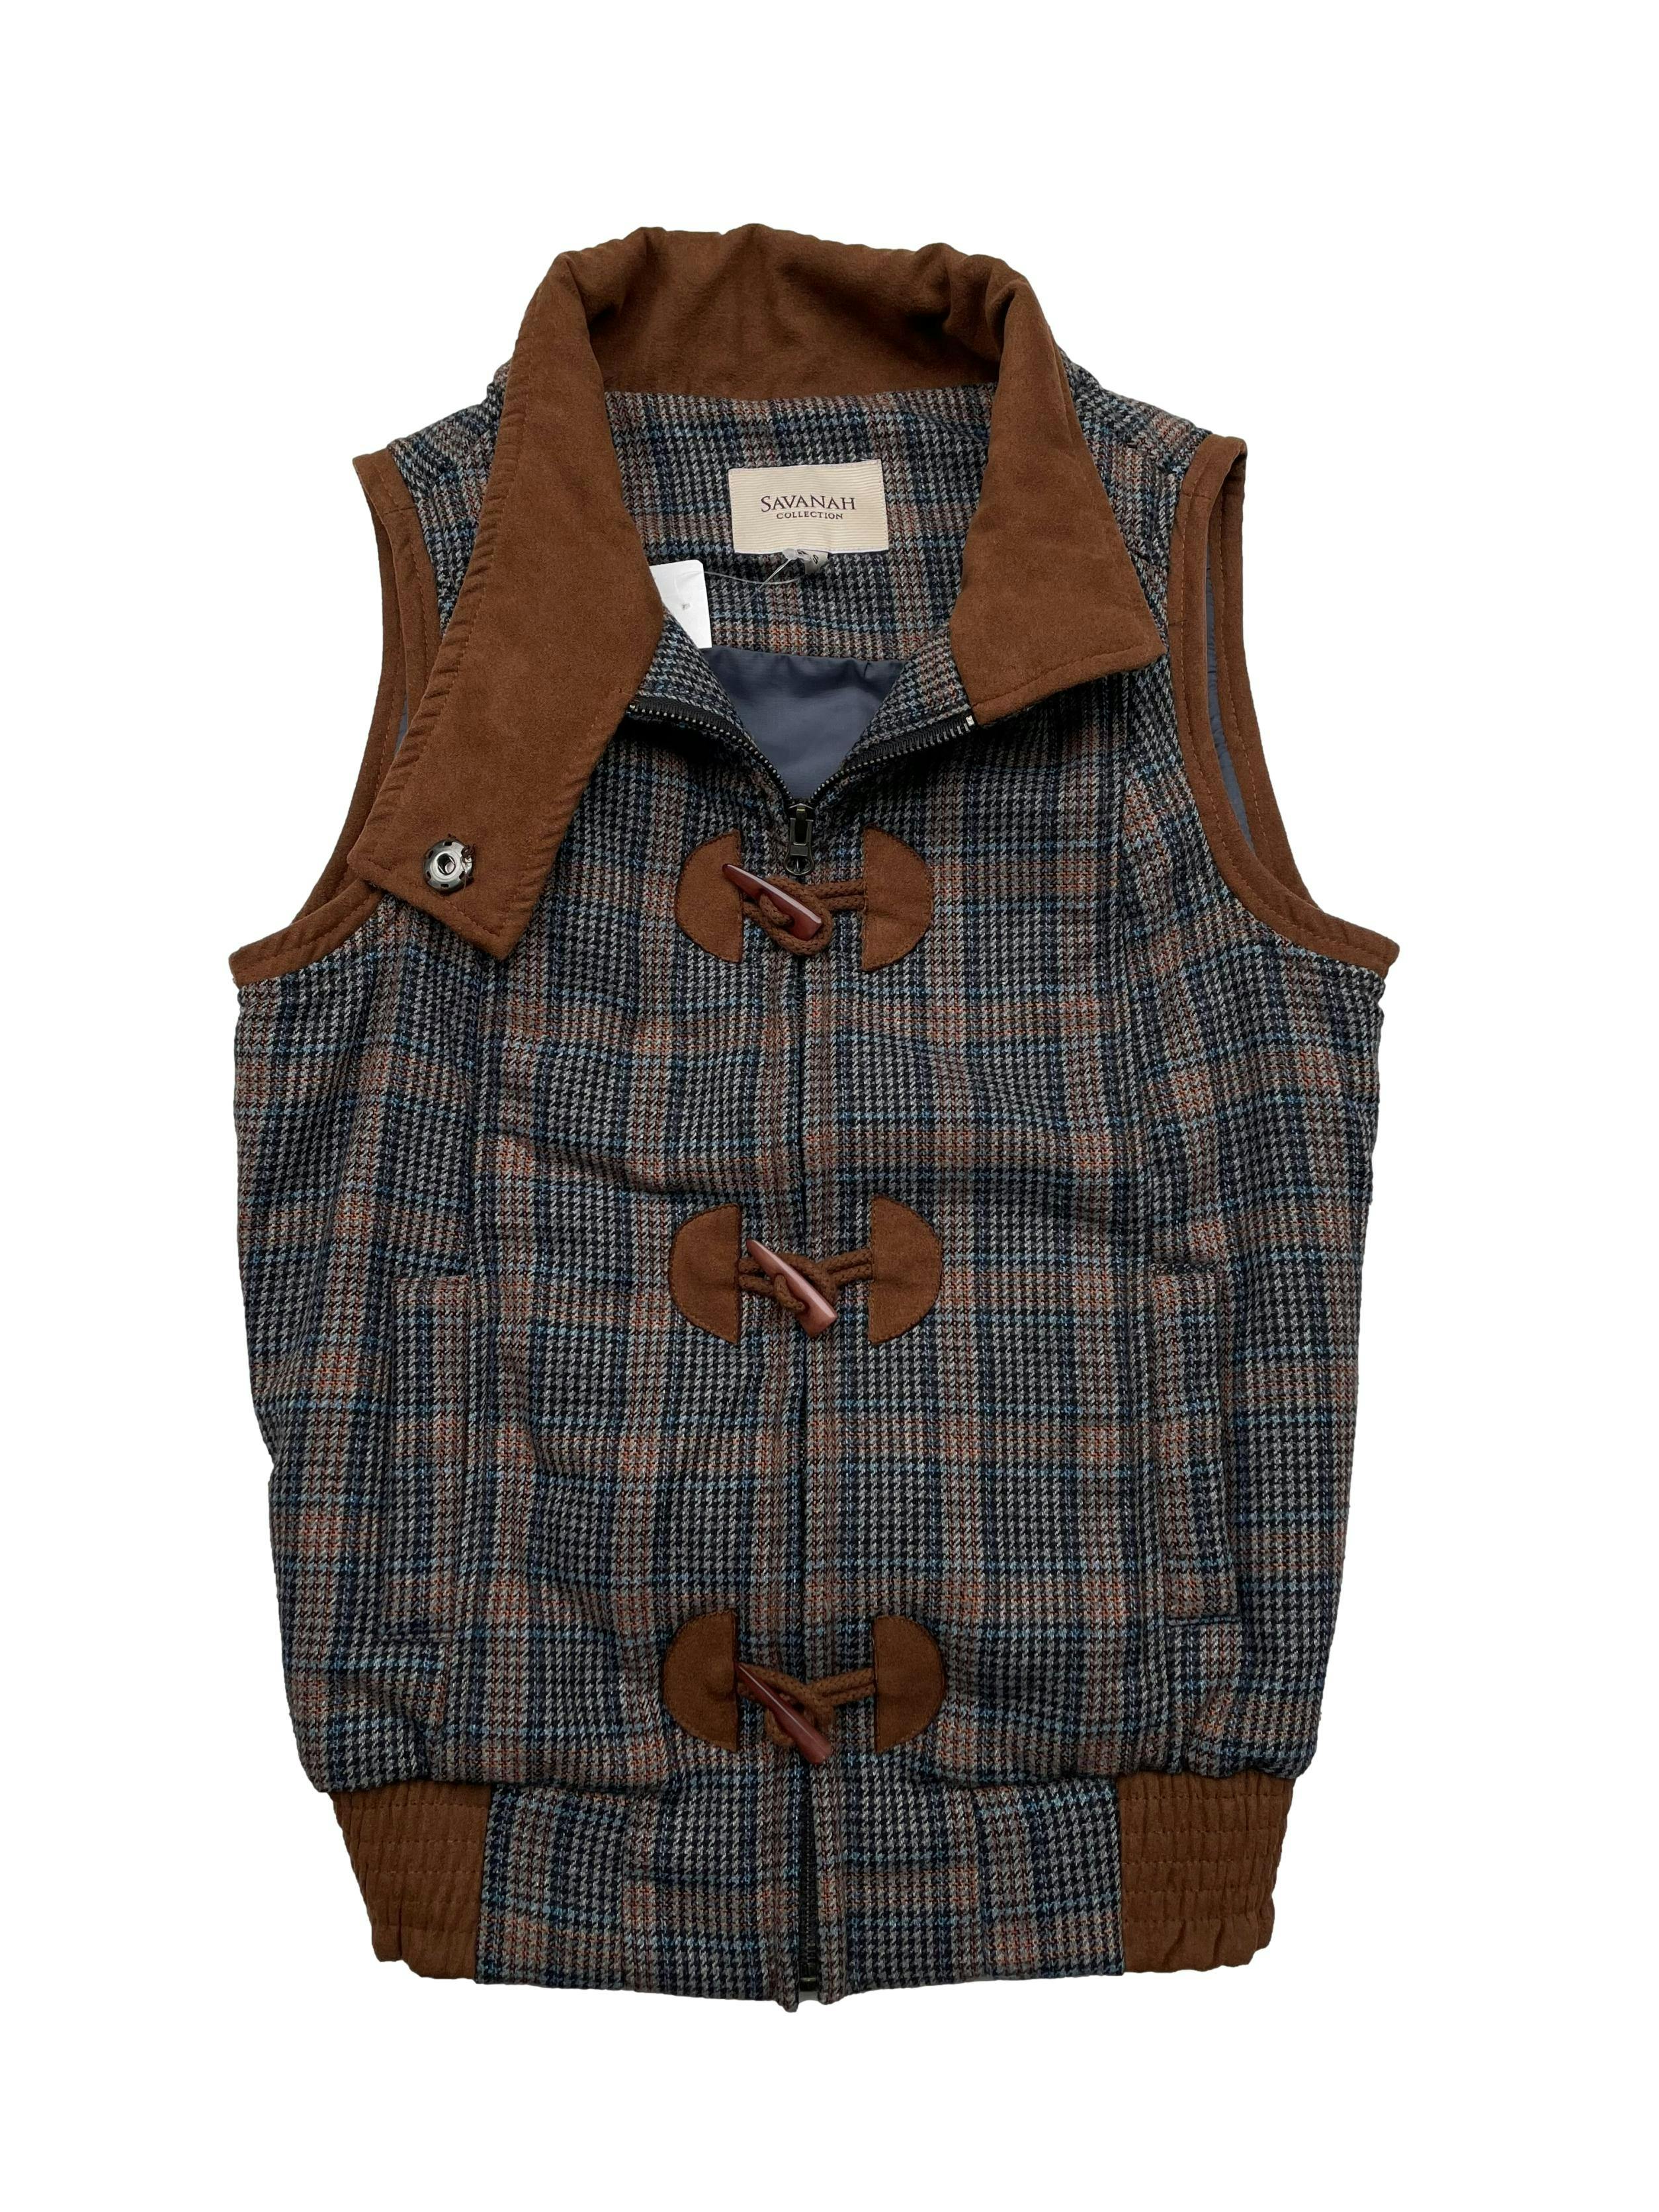 Chaleco Savanah marrón y azul, tela tipo lanilla , ligeramente acolchada. Con bolsillos, botones tipo cacho y cierre. Largo 55cm.